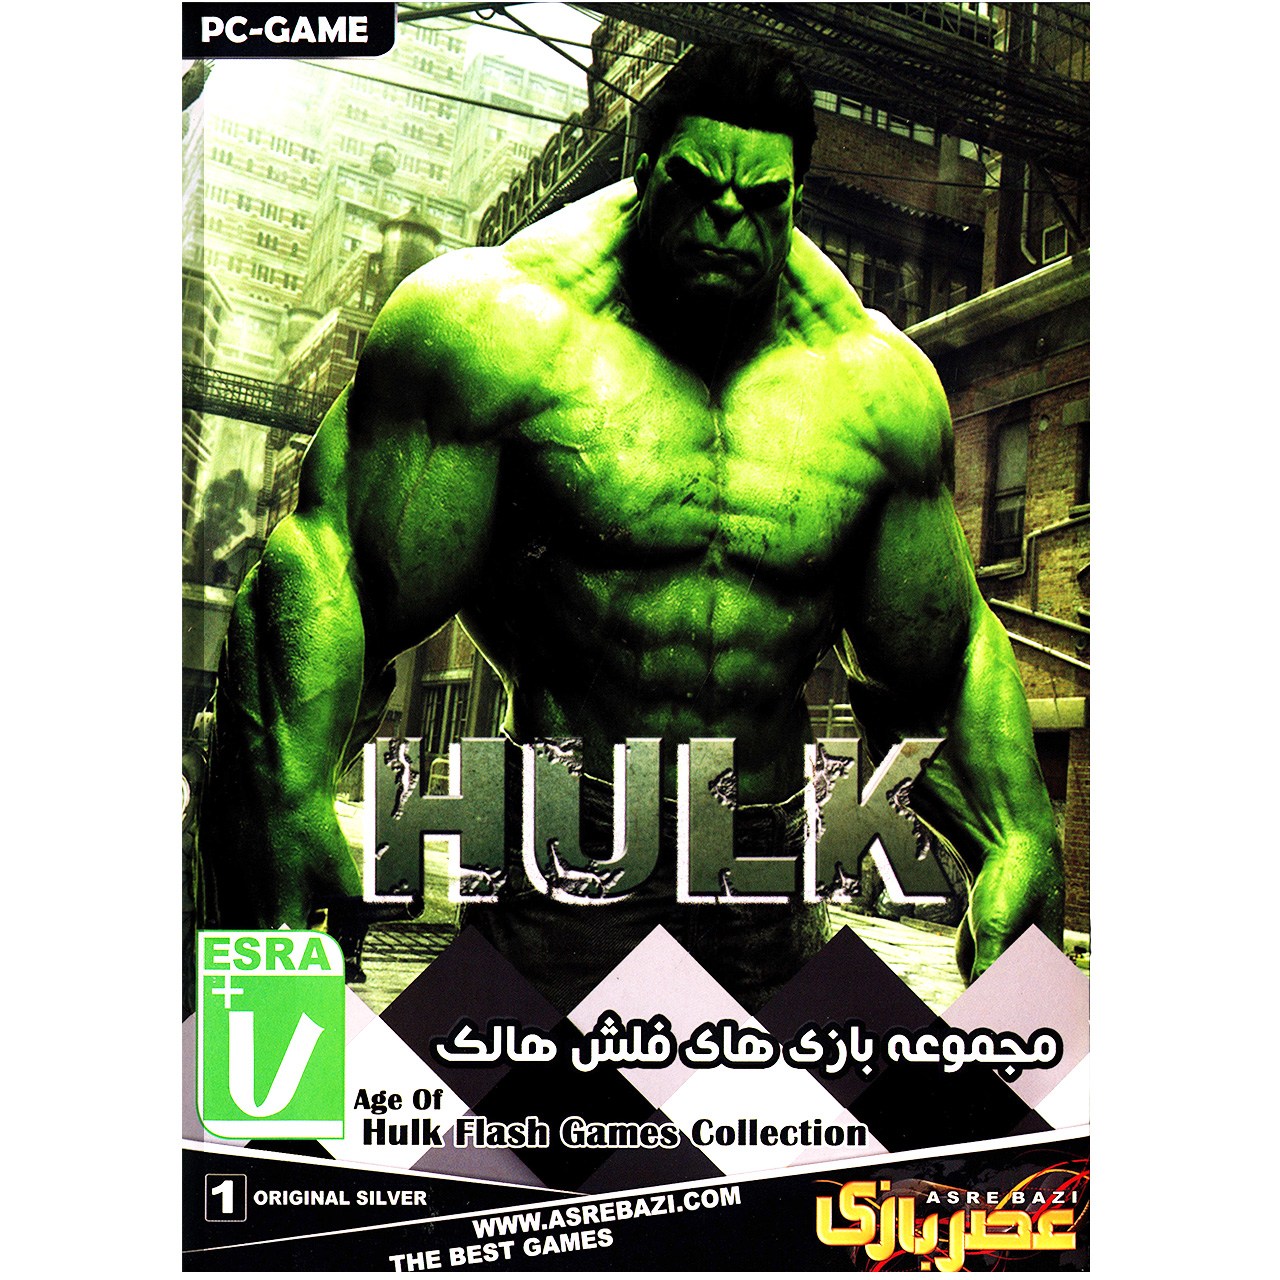 مجموعه بازی های کامپیوتری Hulk